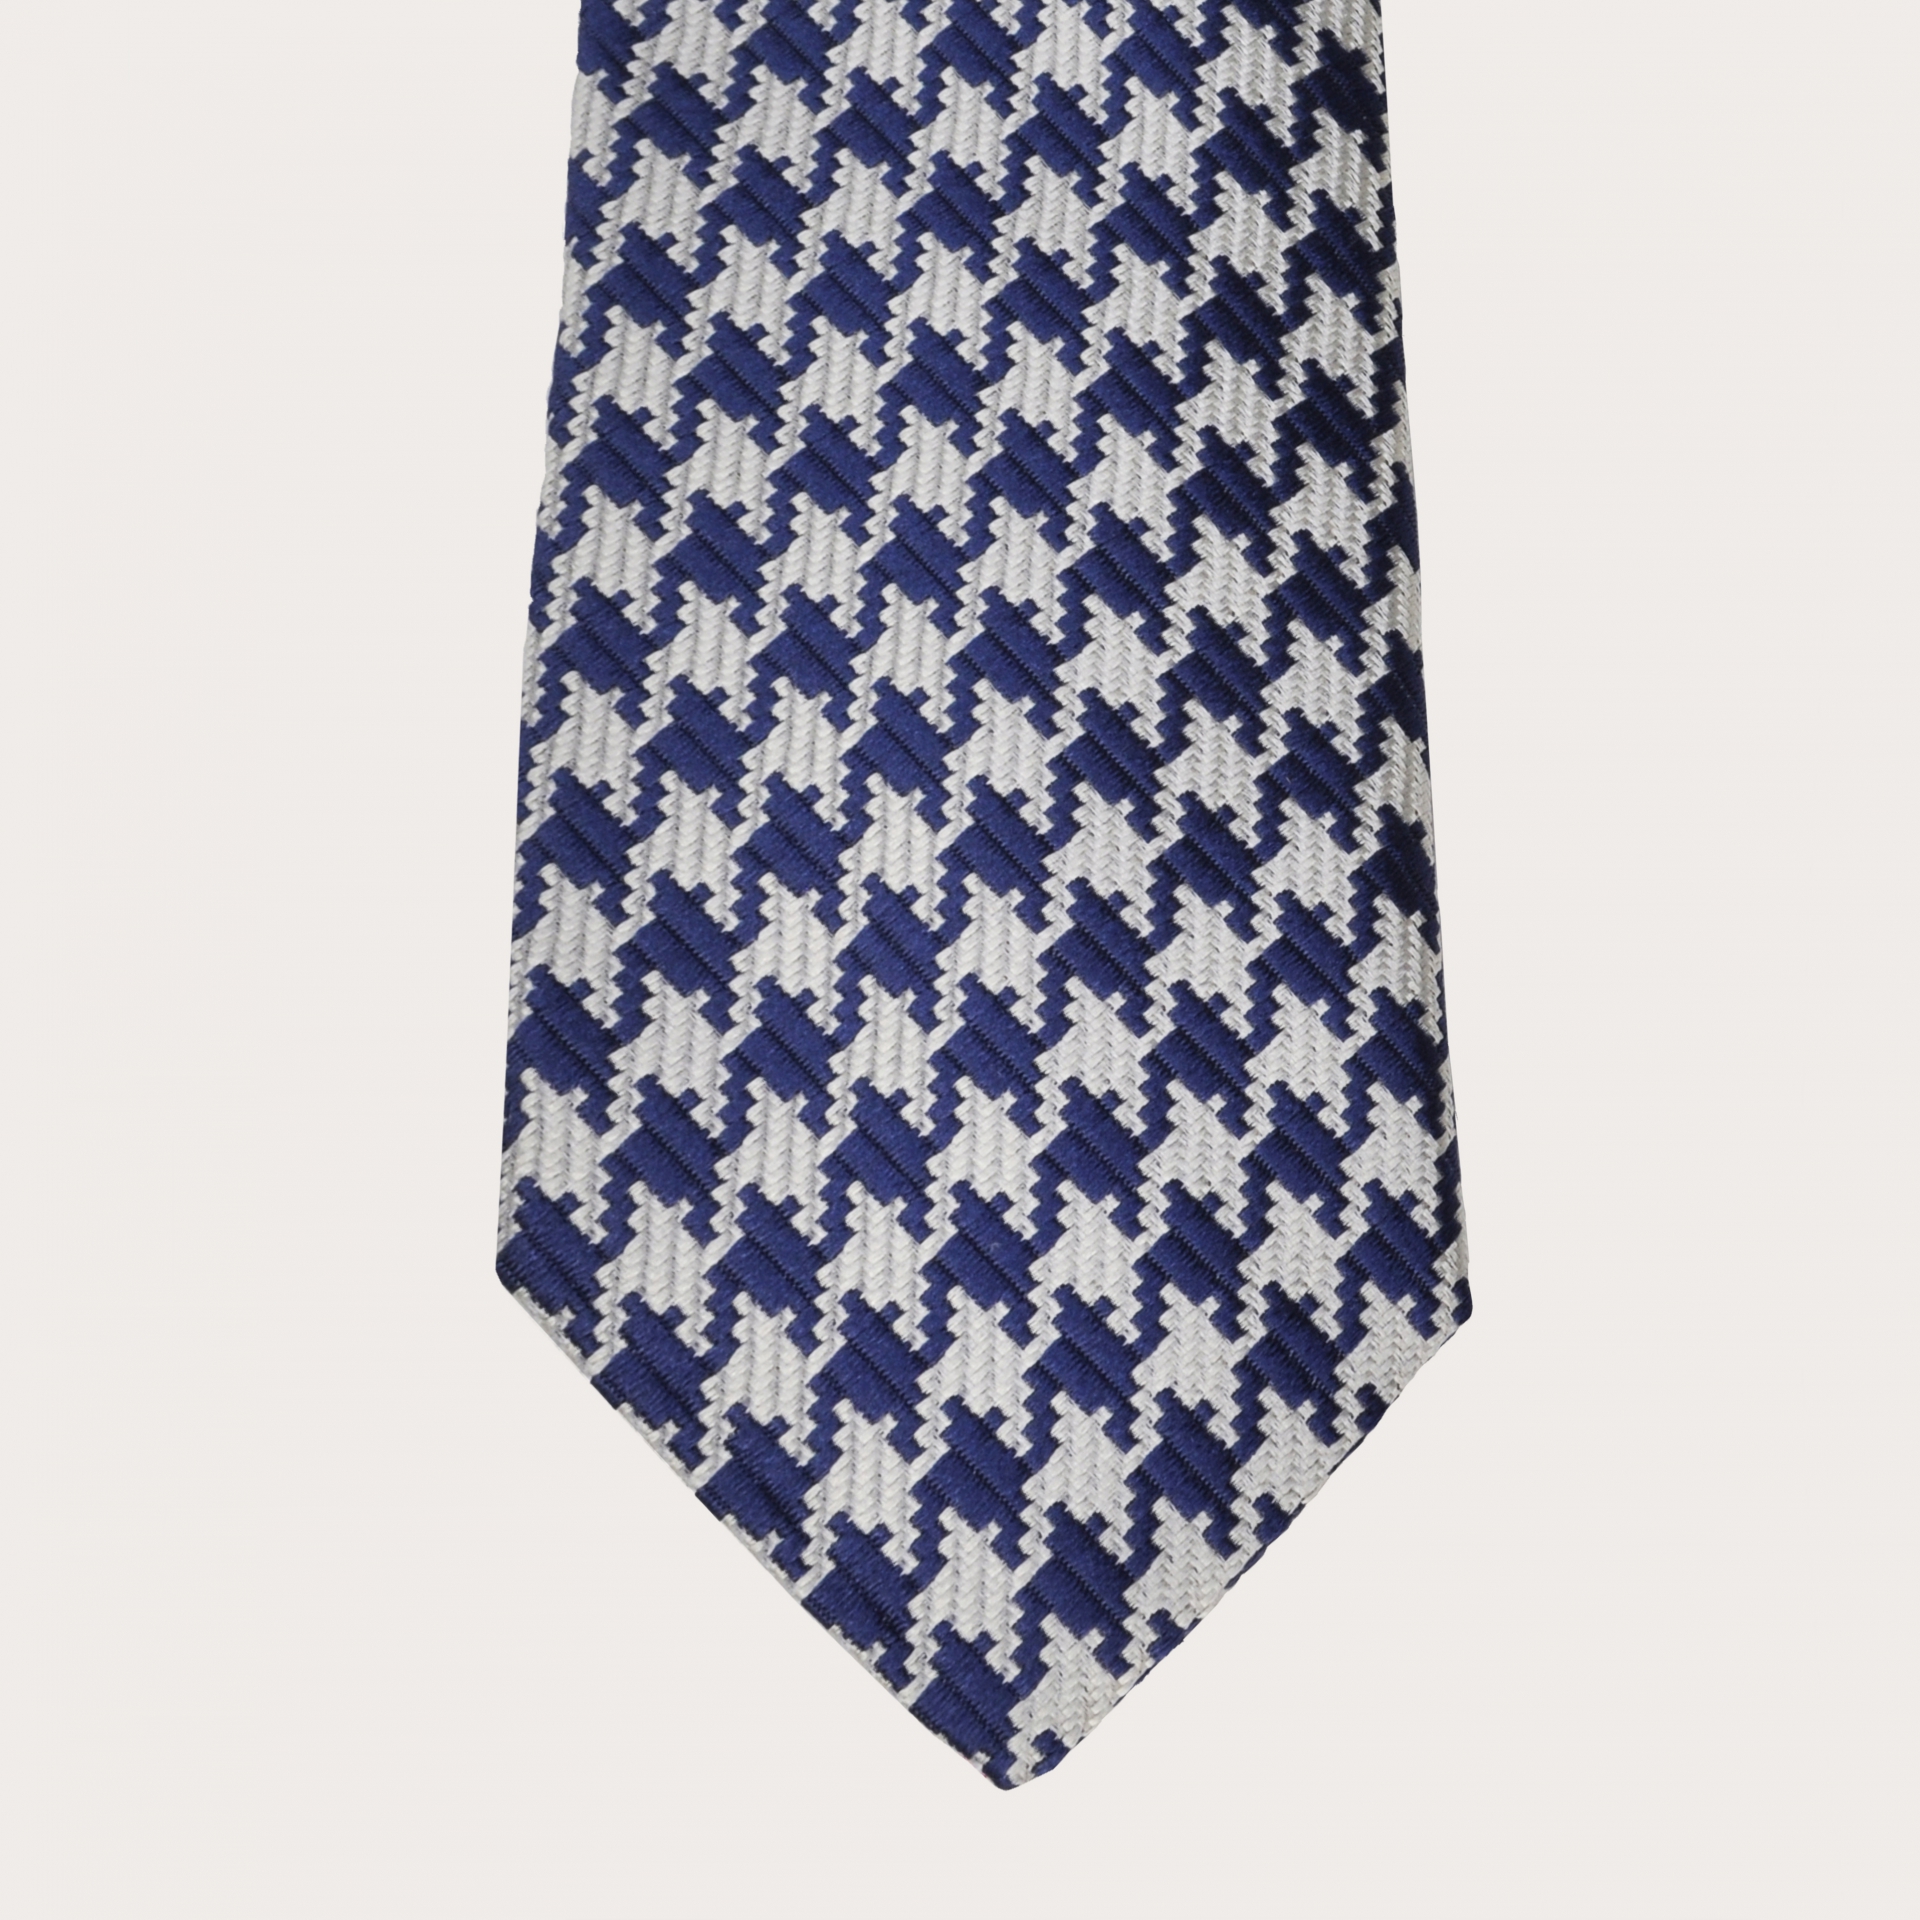 Brucle cravate en soie pied de poule blue